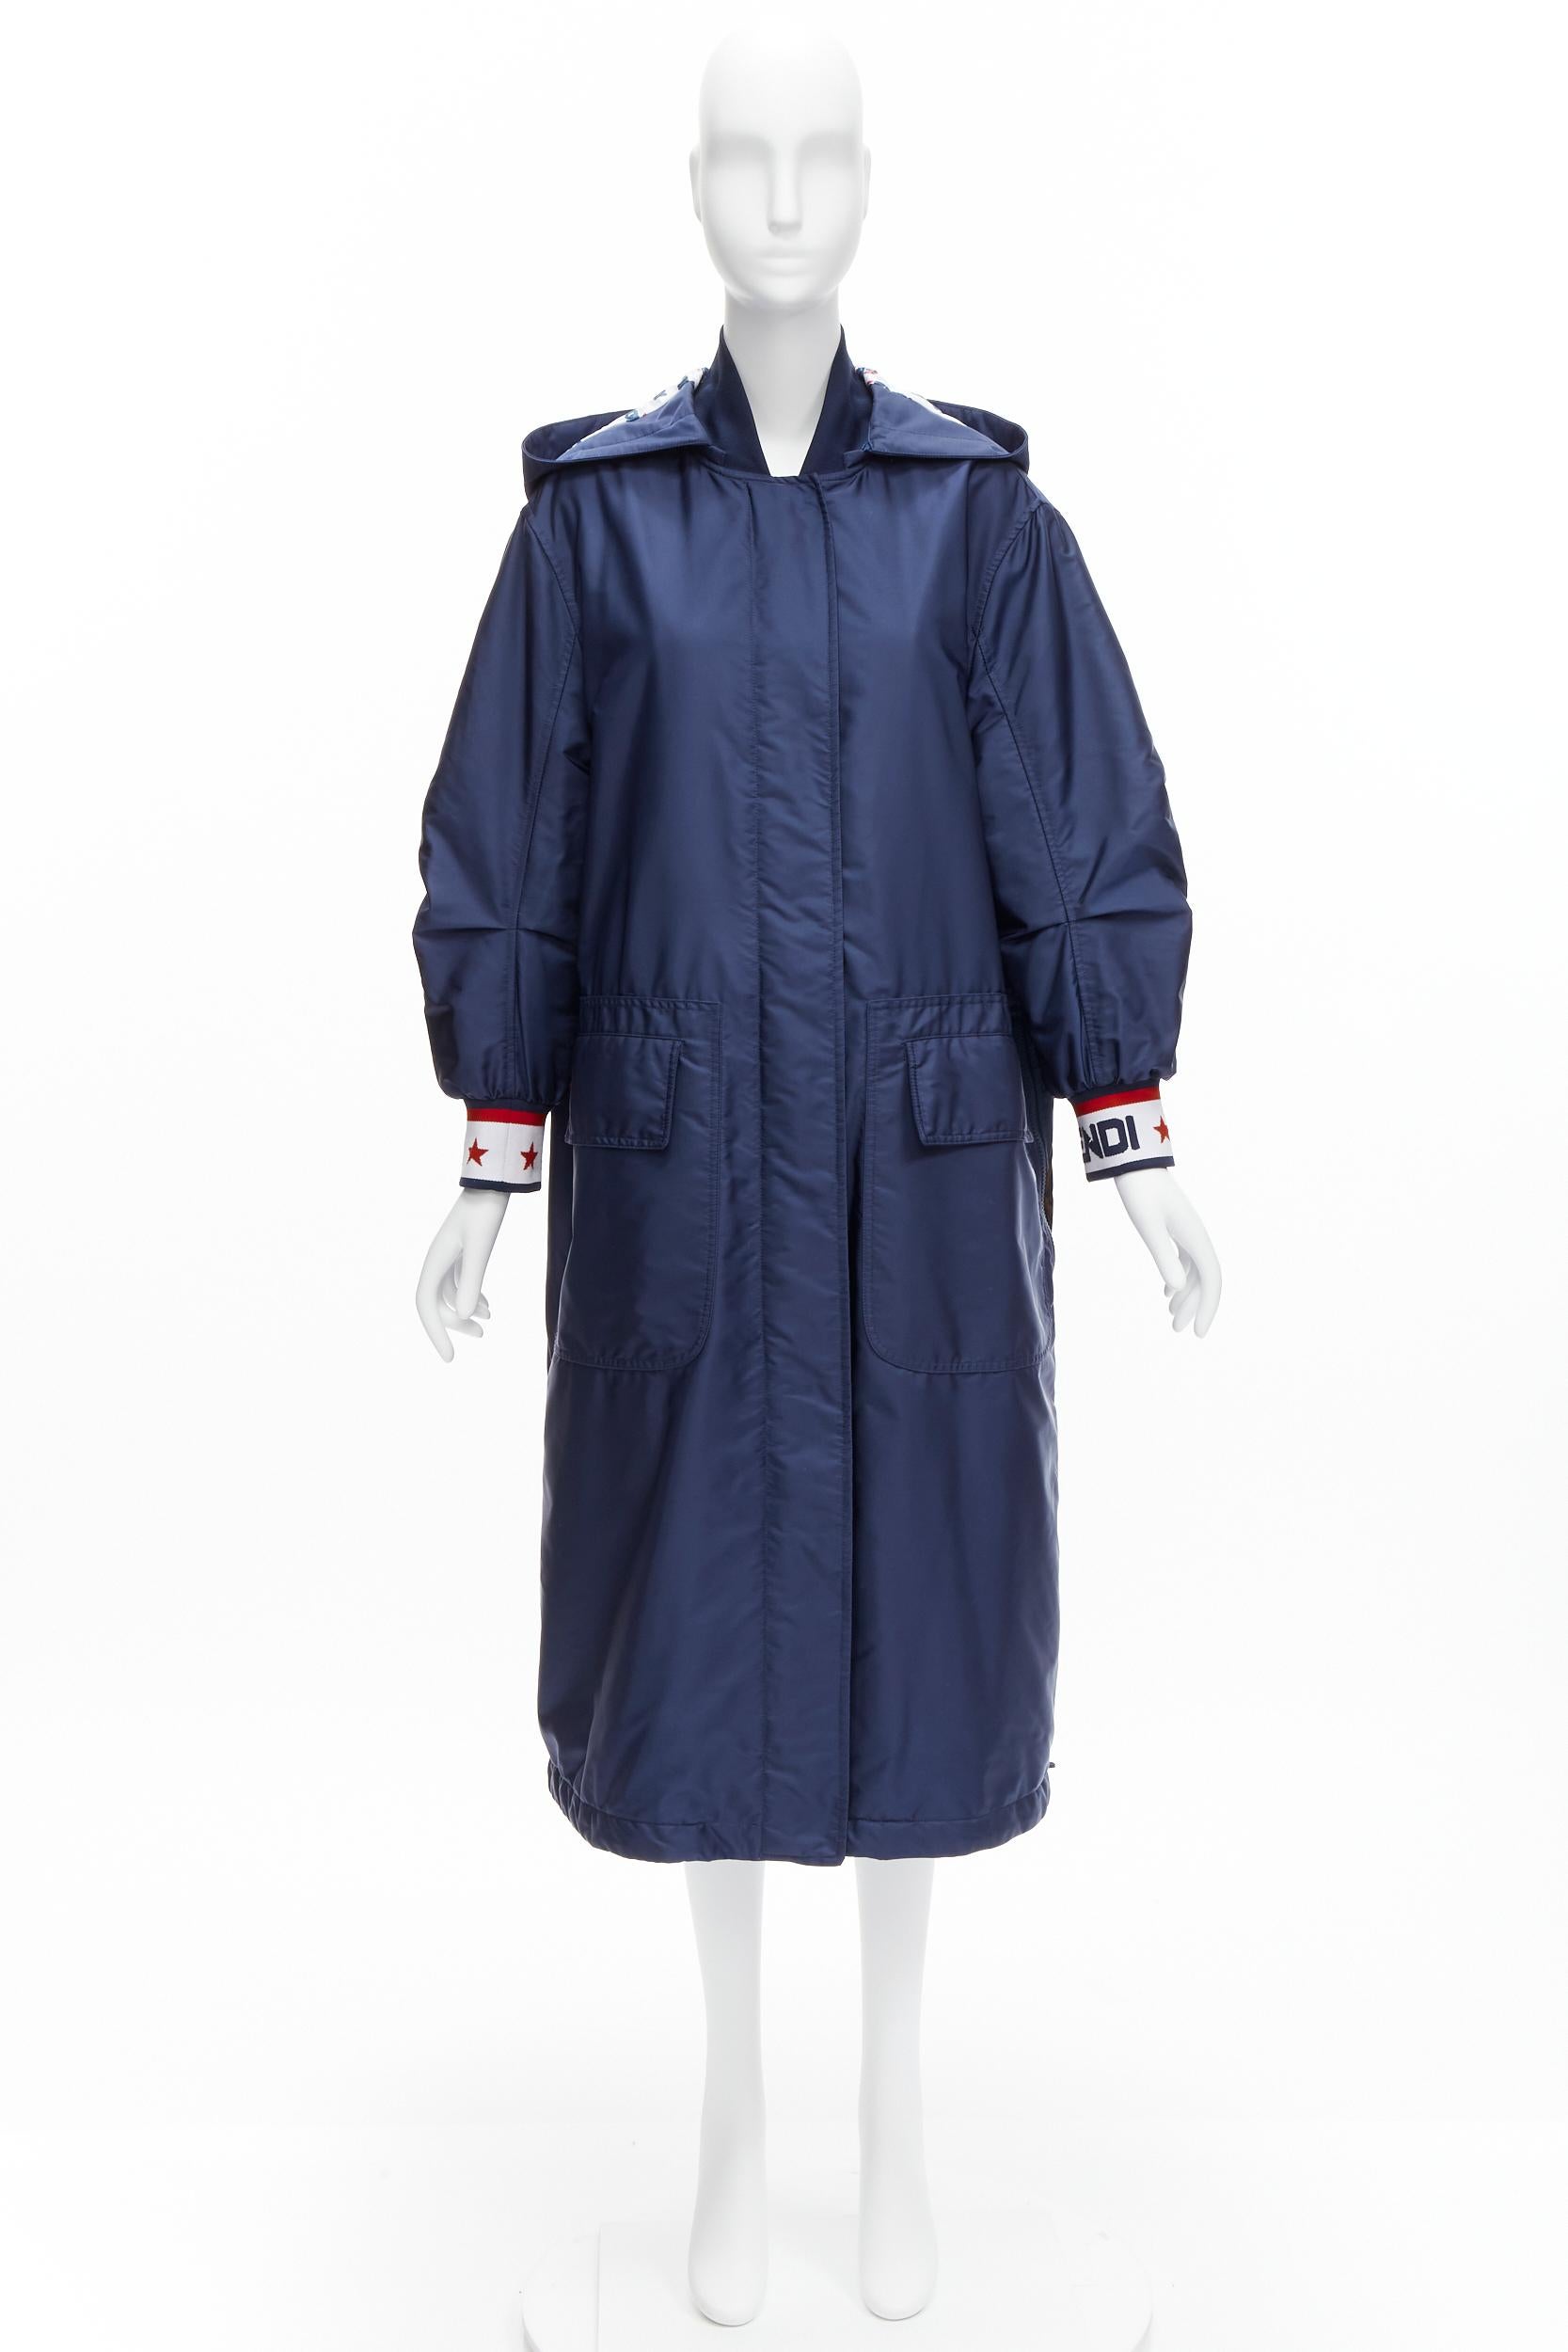 FENDI FILA 2018 Runway oversized logo navy nylon hooded padded coat S For Sale 6